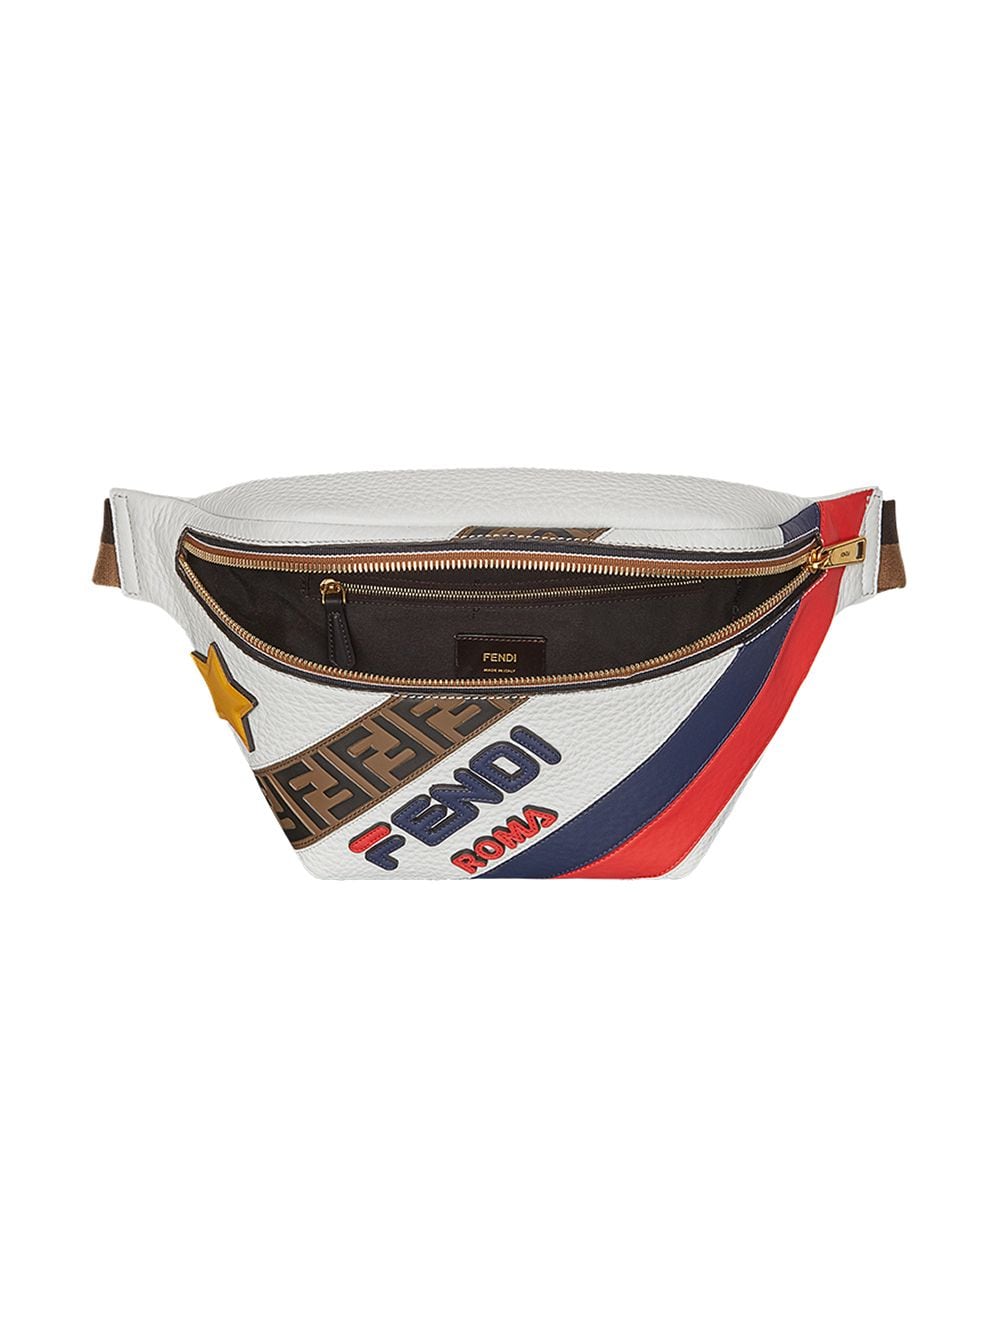 Fendi FendiMania panelled belt bag $1 